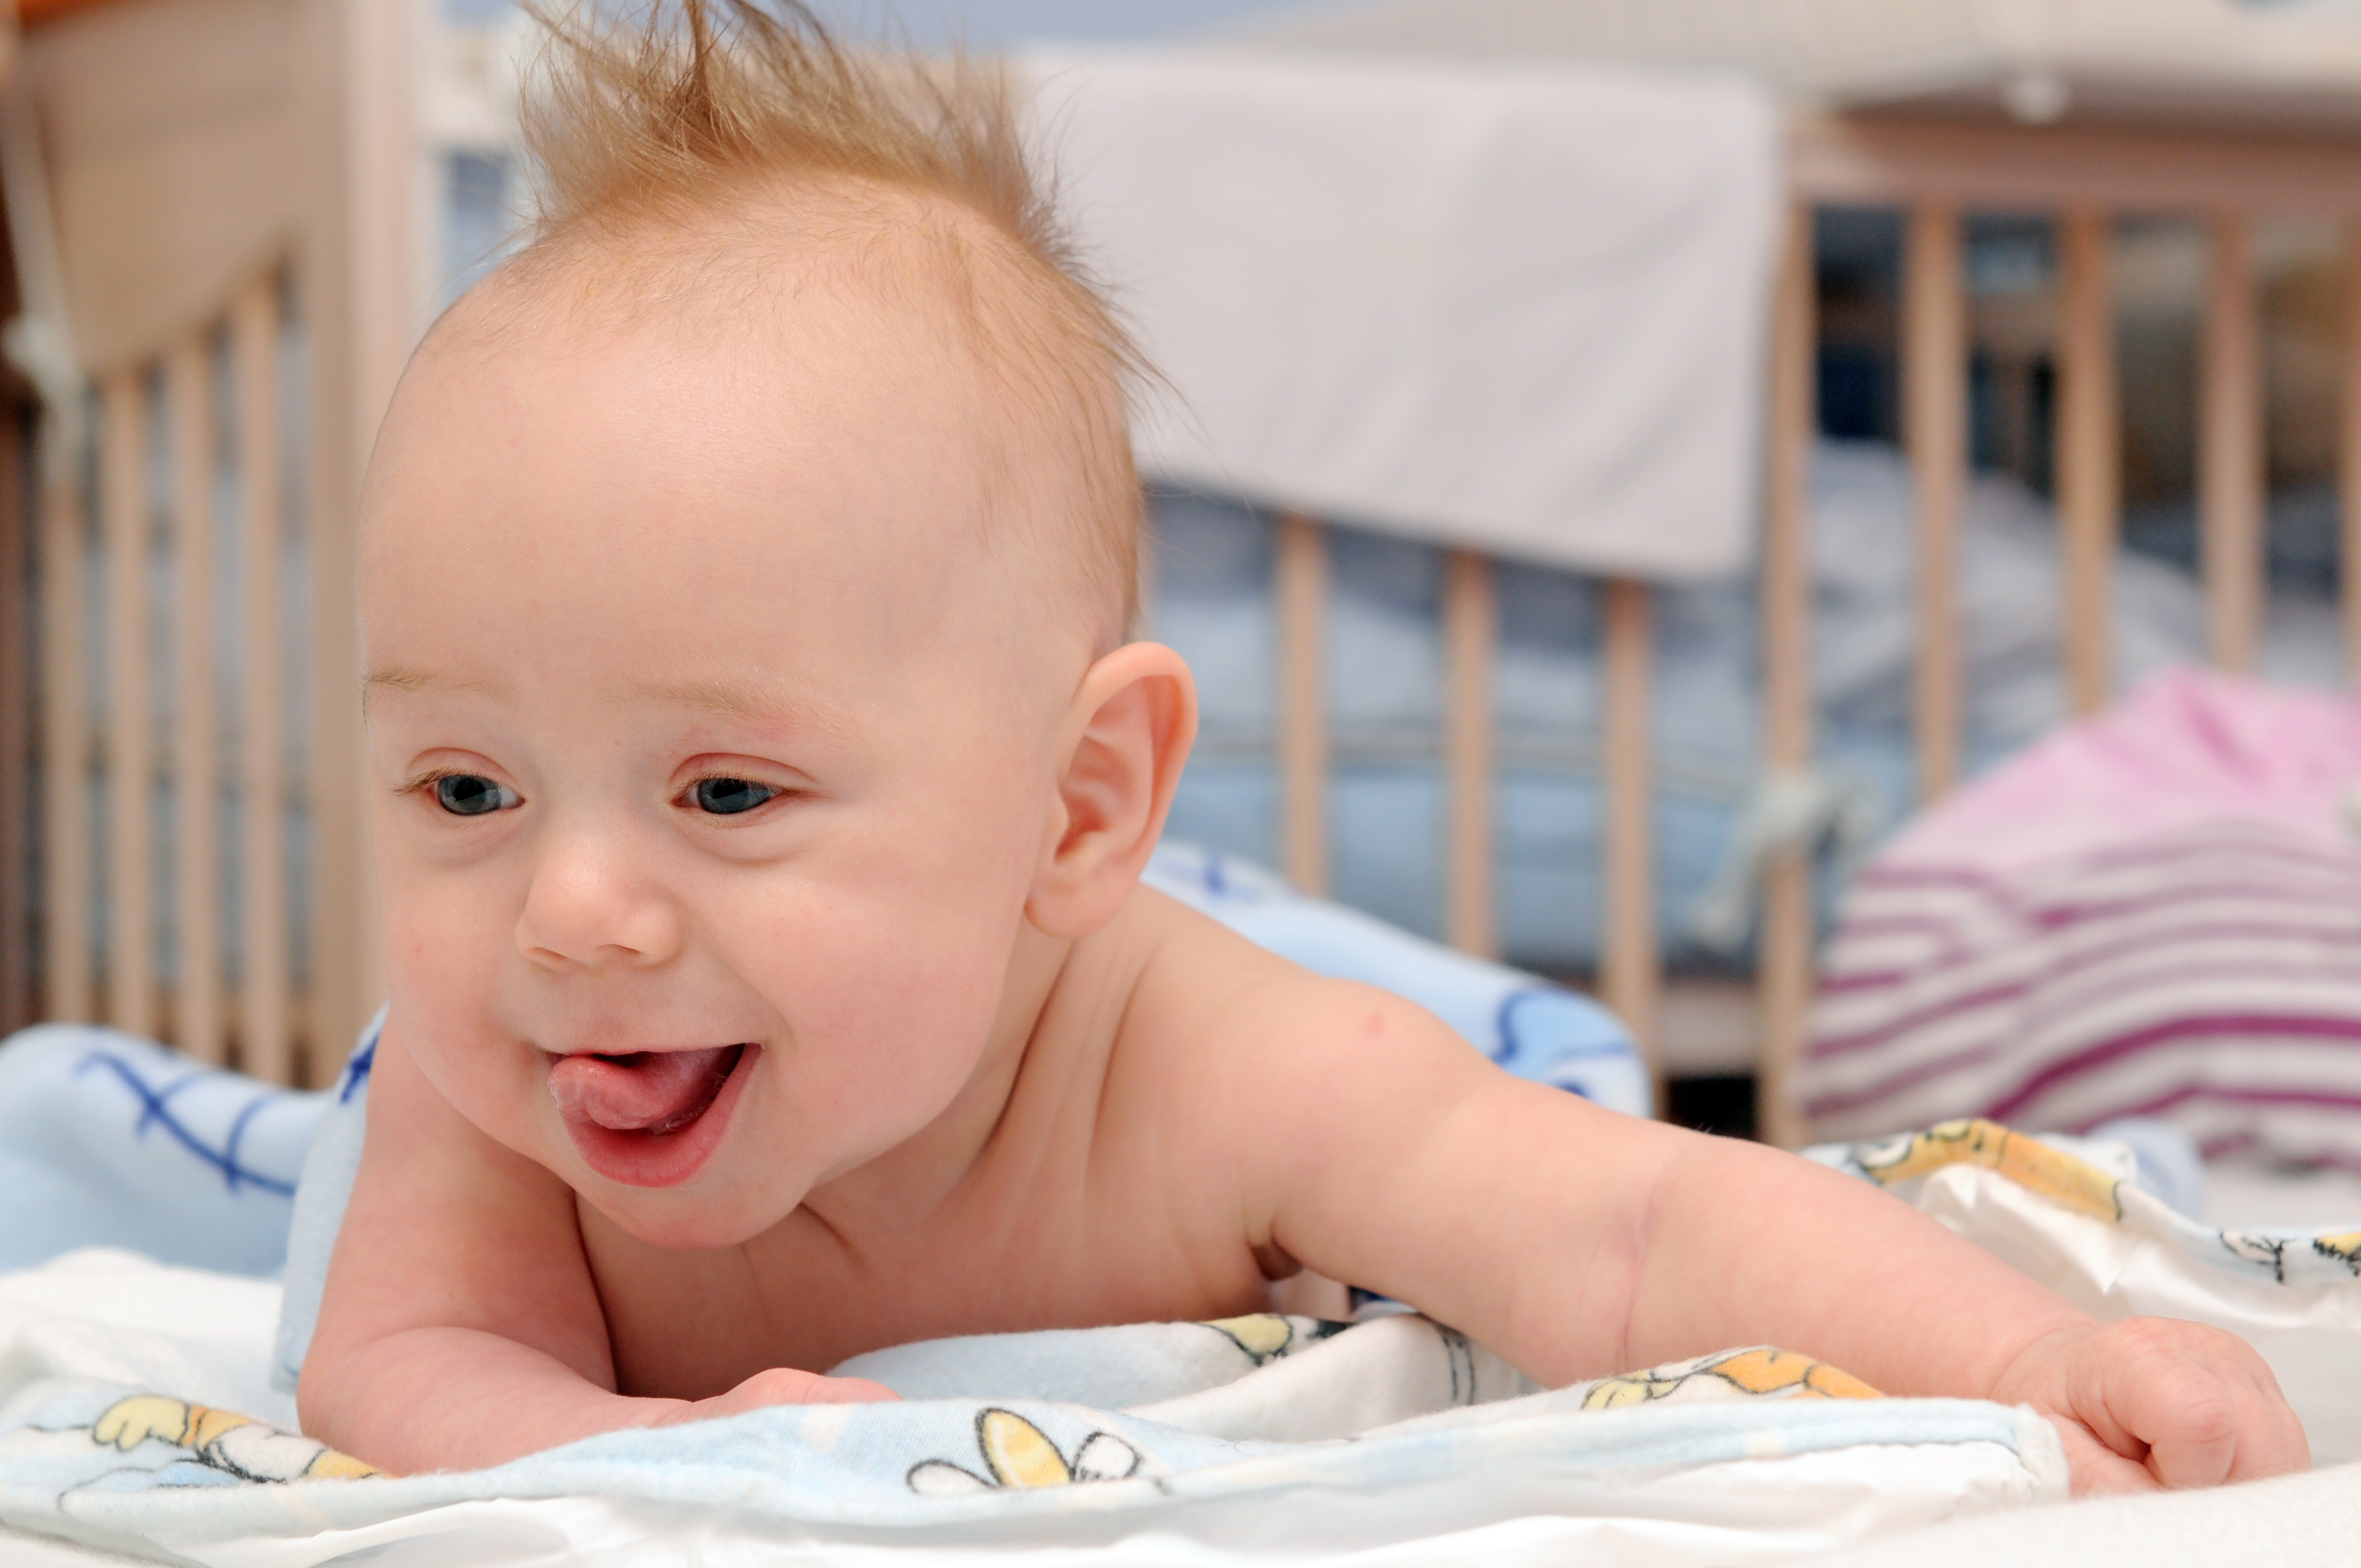 Da li su klima uređaji bezbedni za bebe?